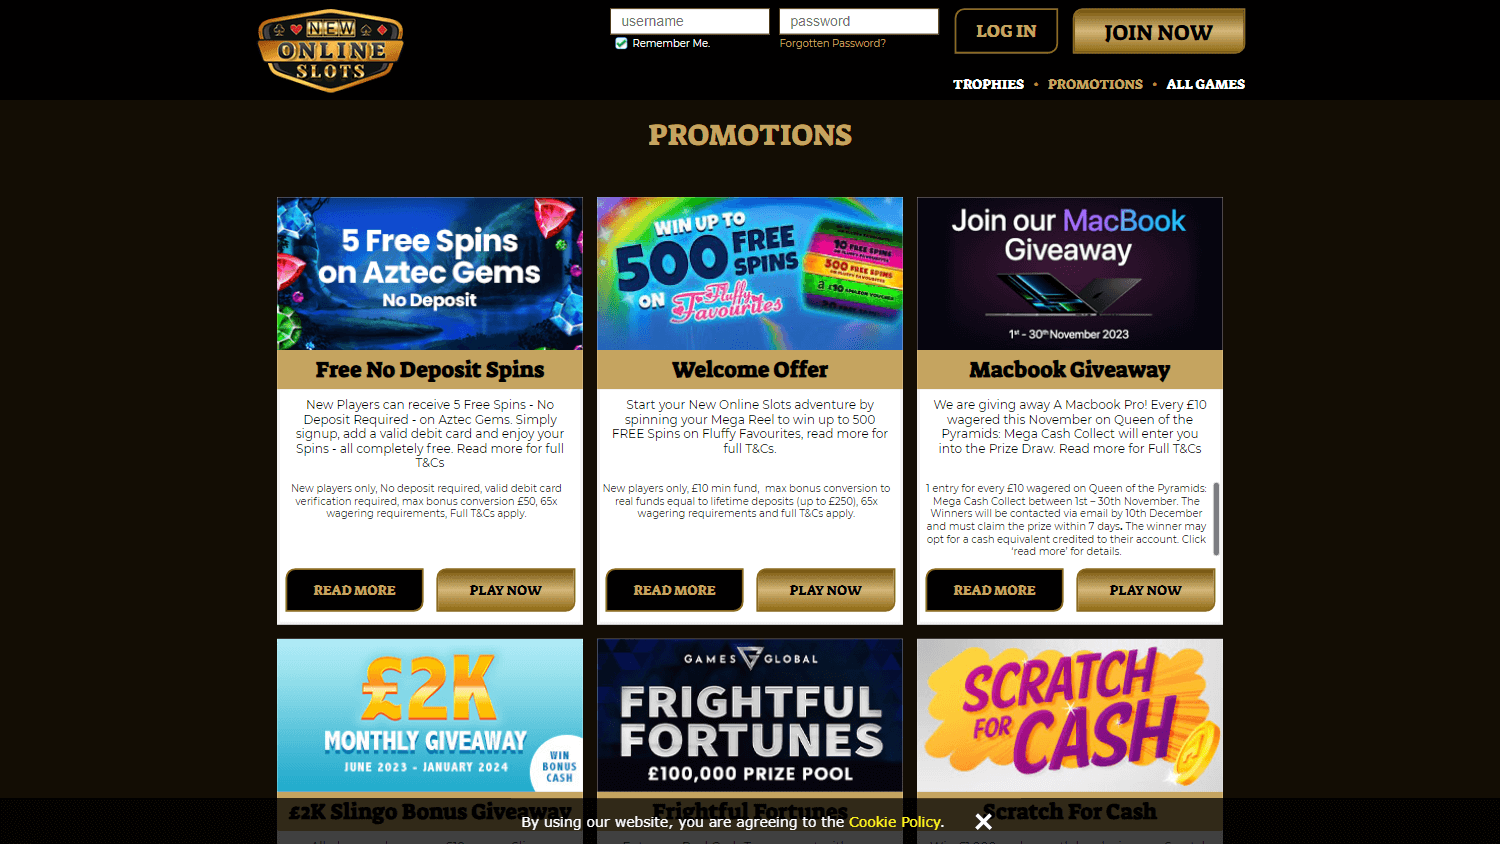 new_online_slots_casino_promotions_desktop